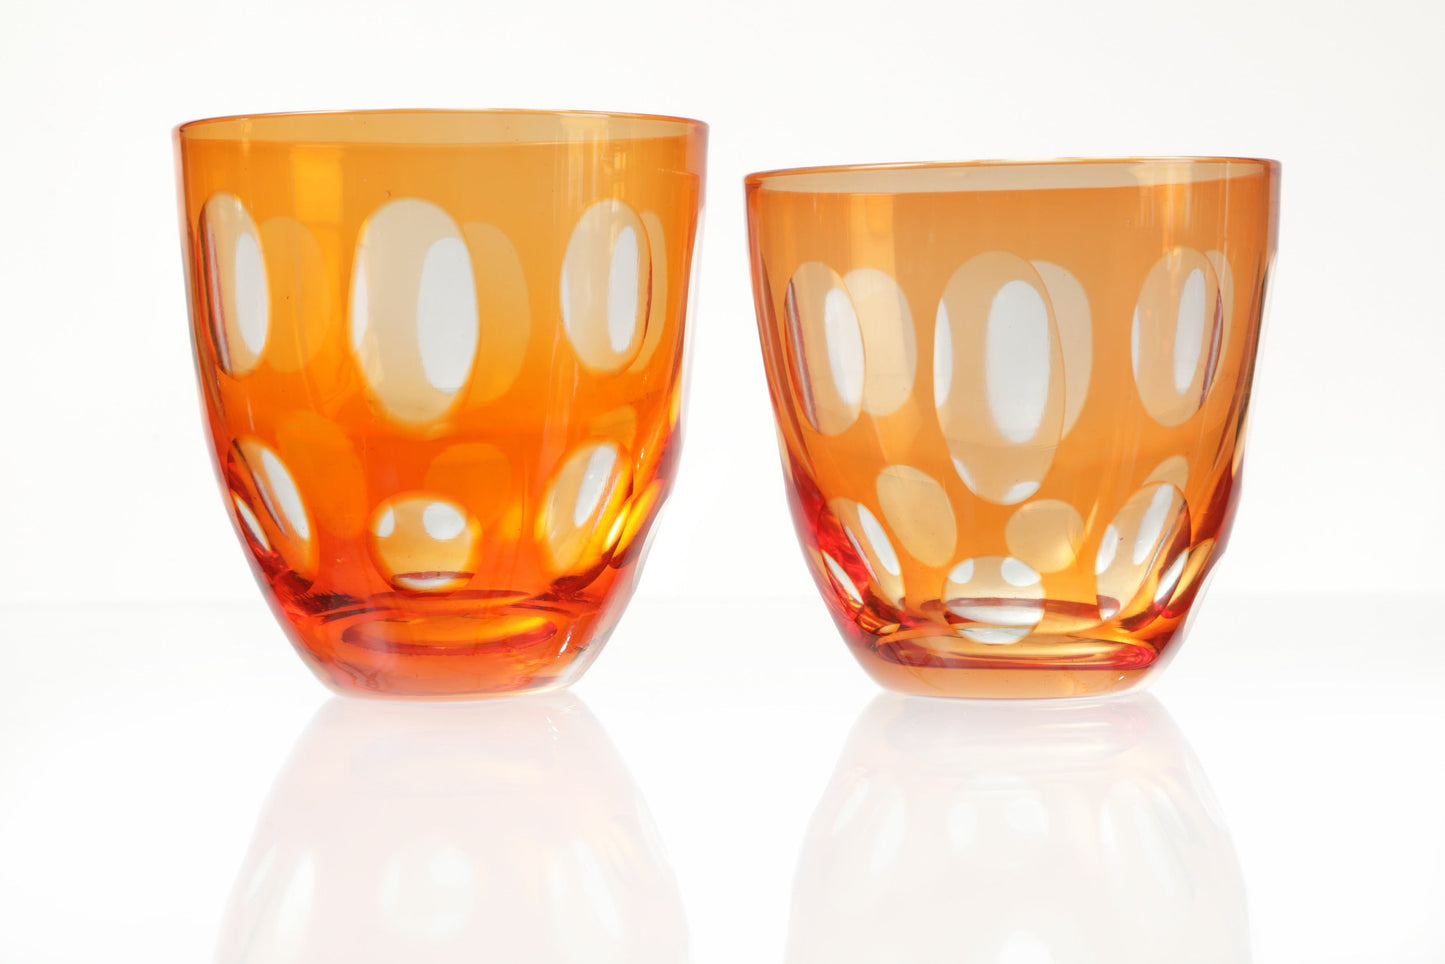 Servizio bicchieri cristallo arancione anni 60